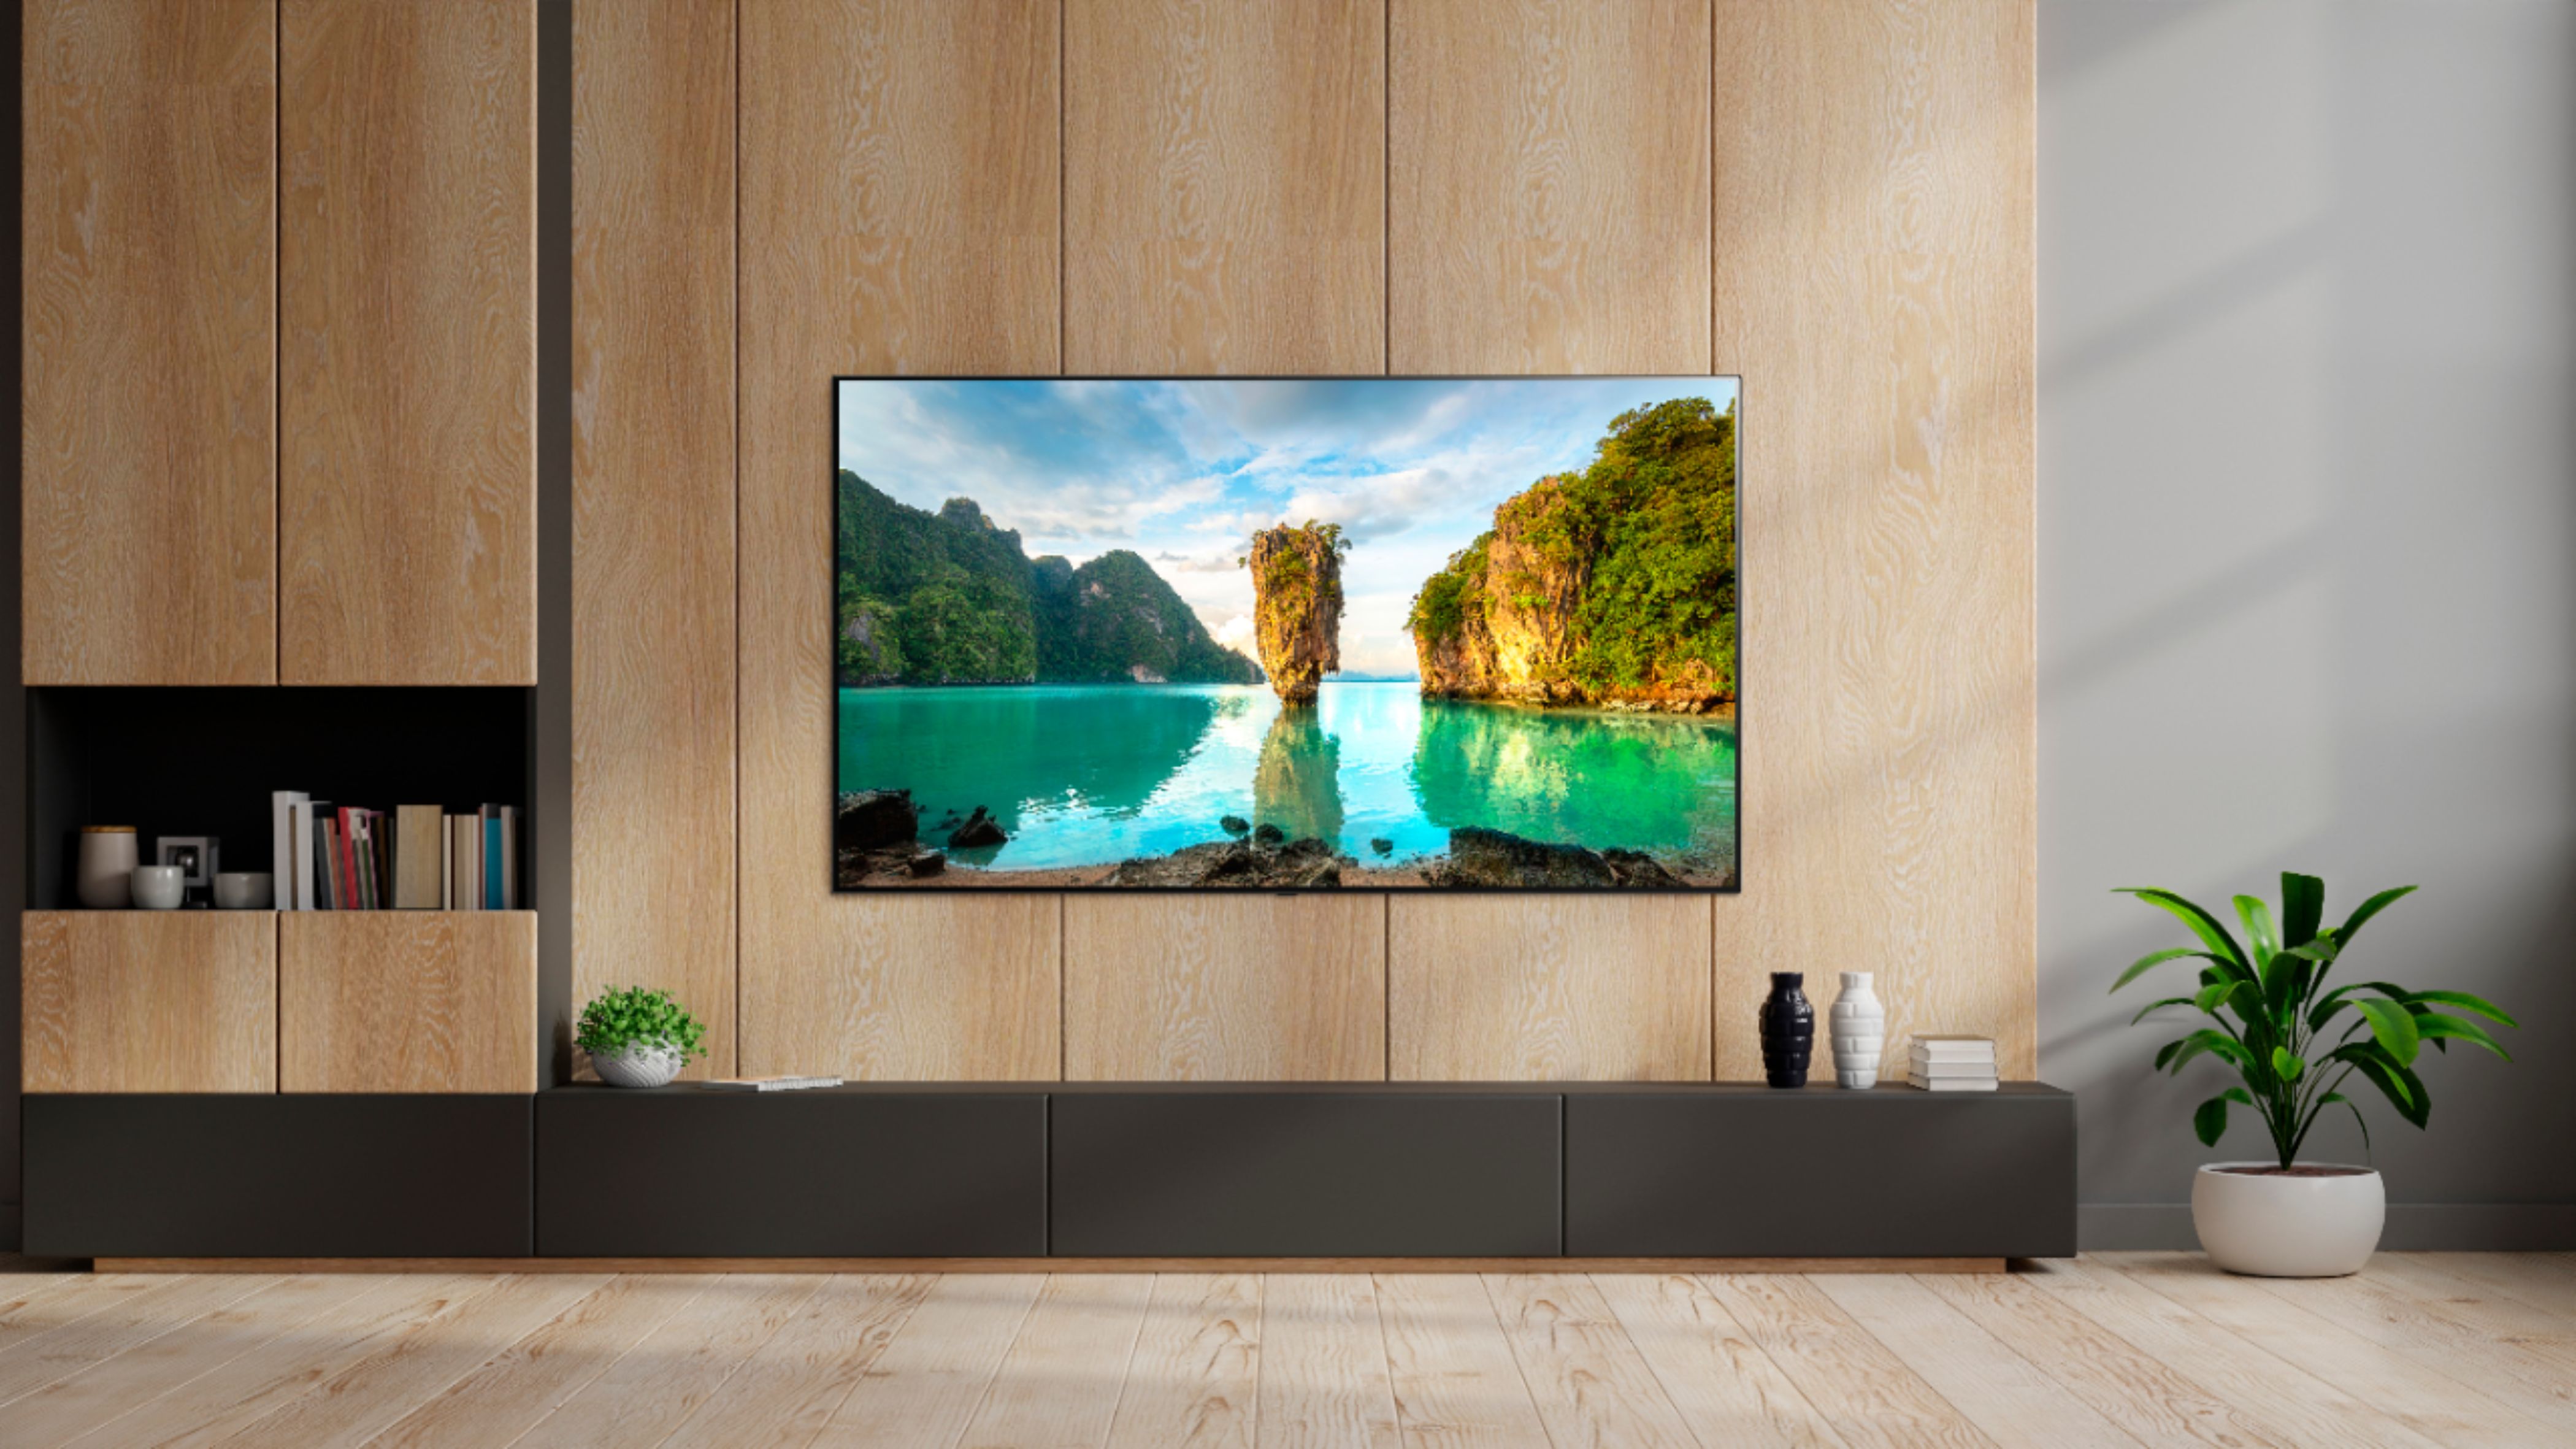 TV LG 65 Pulgadas 164 cm OLED65A1 4K-UHD OLED Smart TV